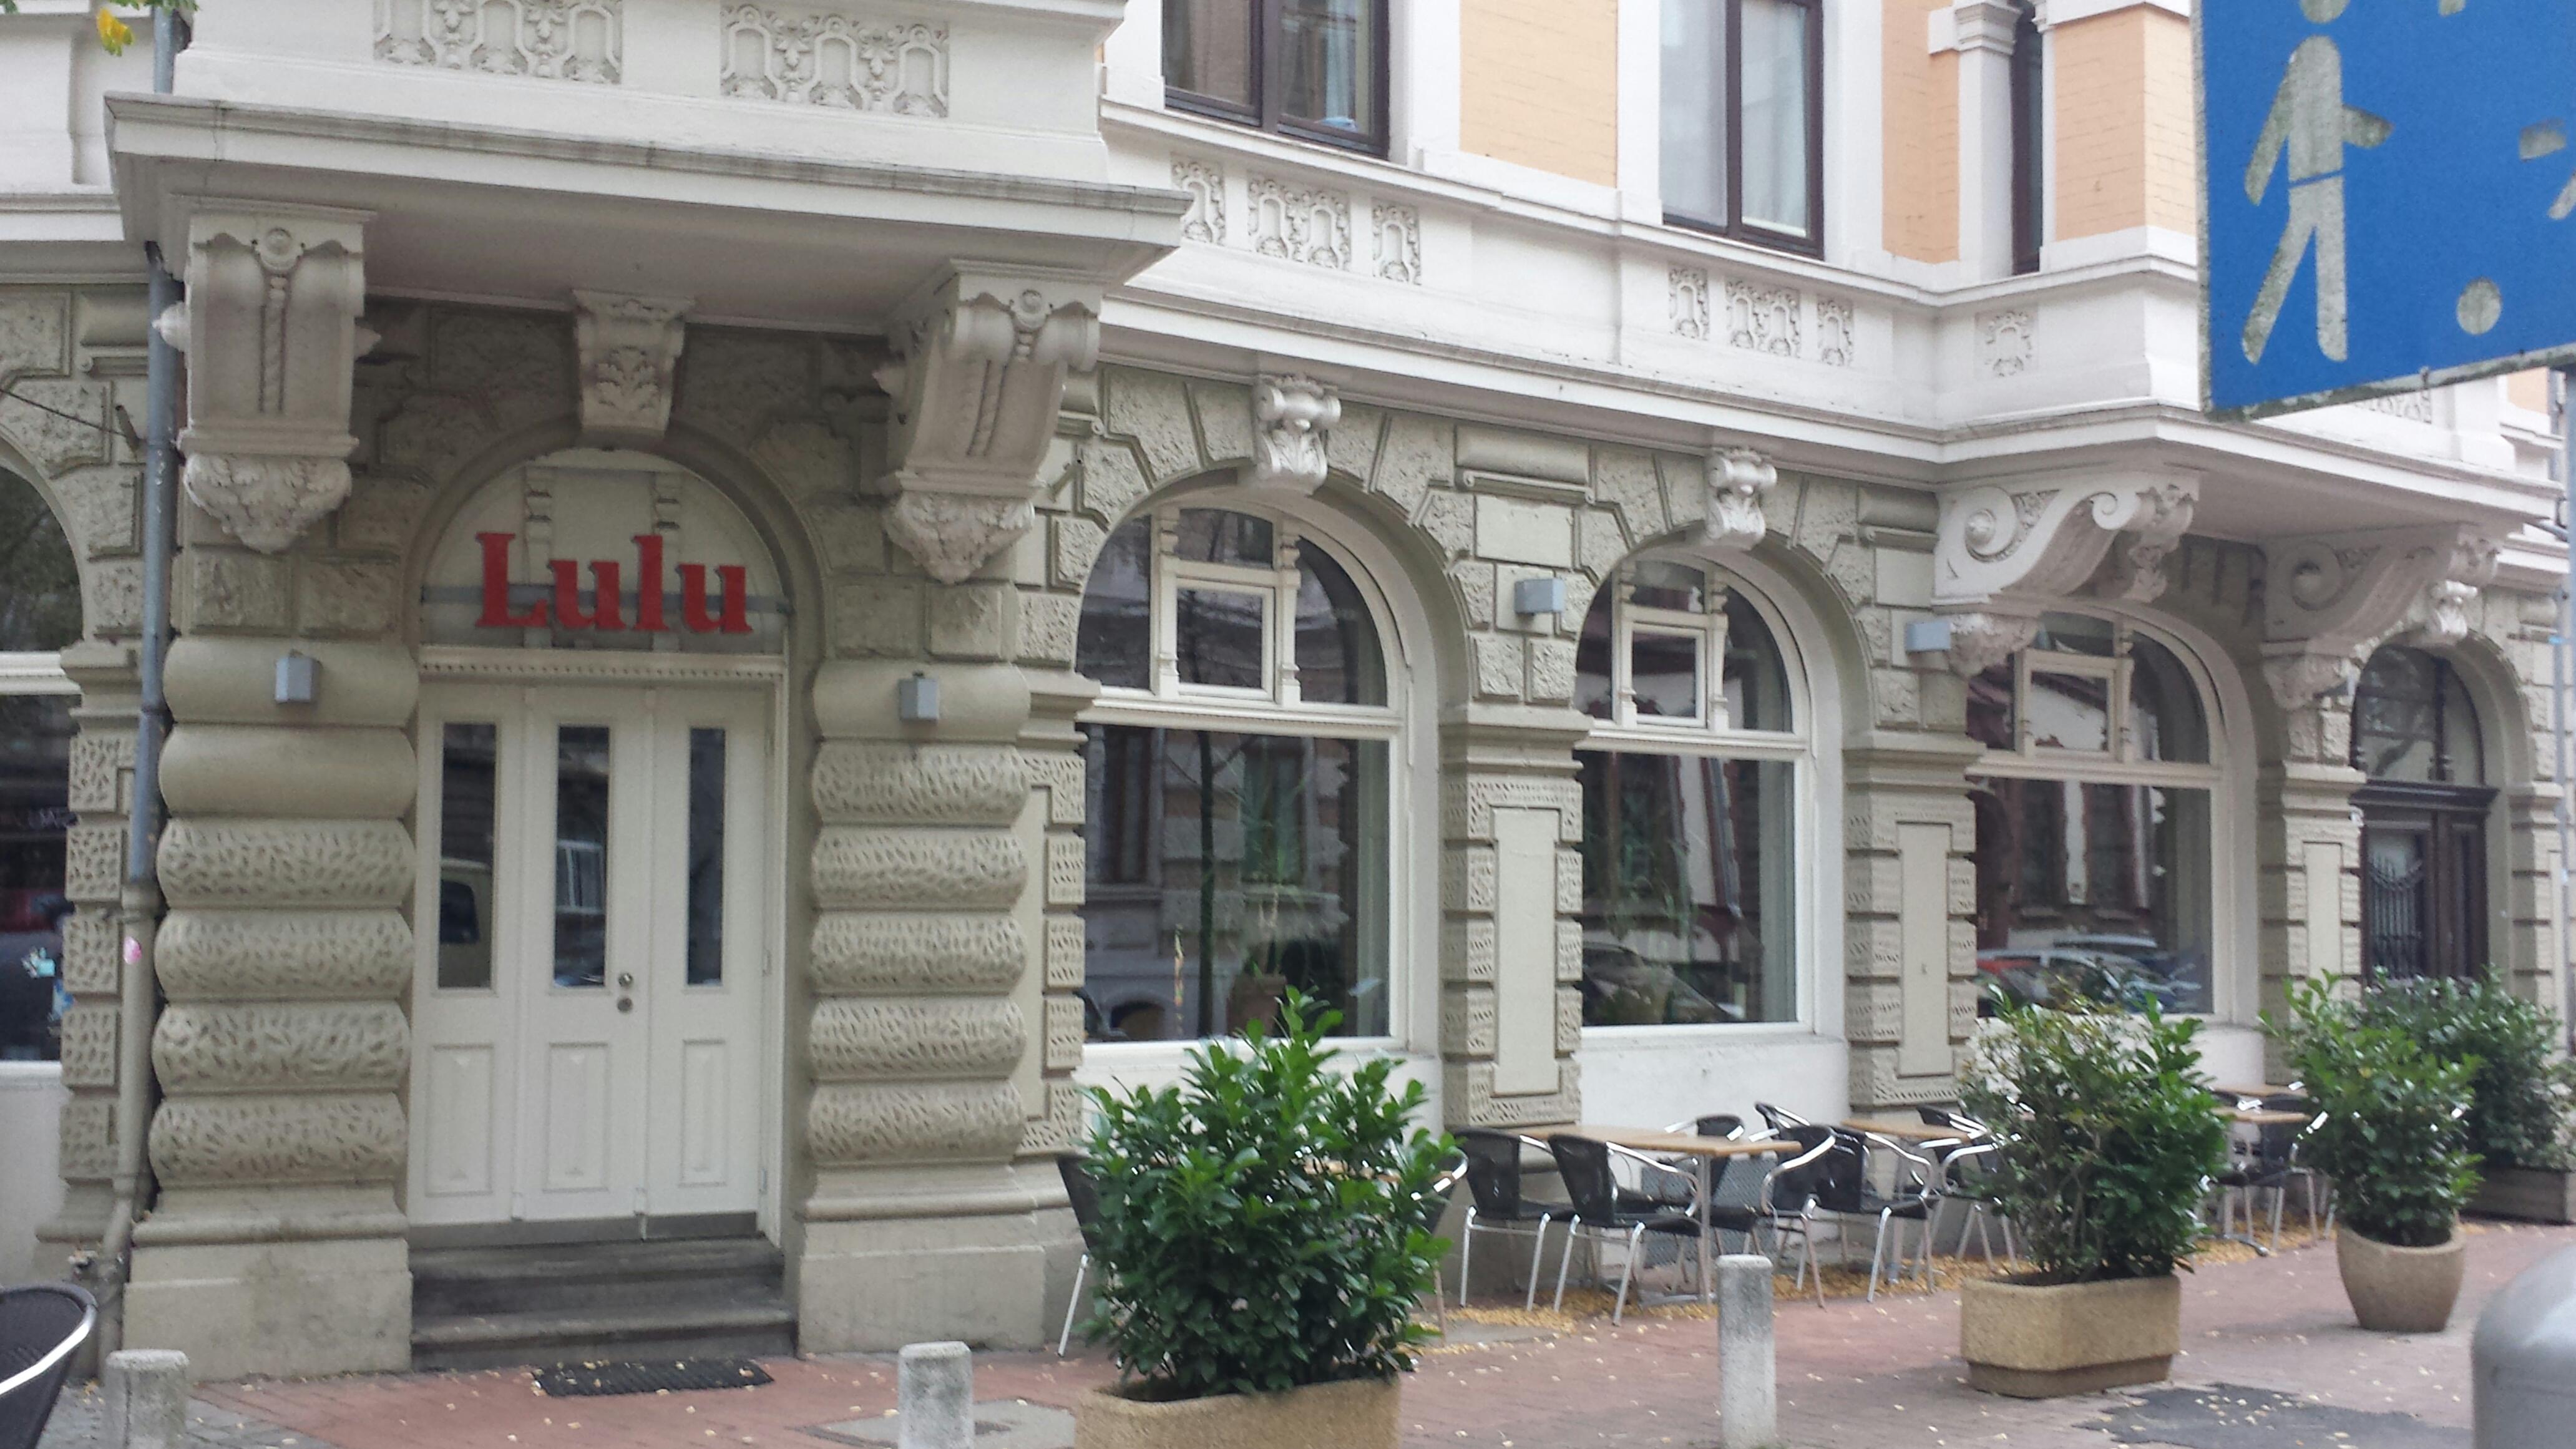 Bild 1 Lulu in Hannover